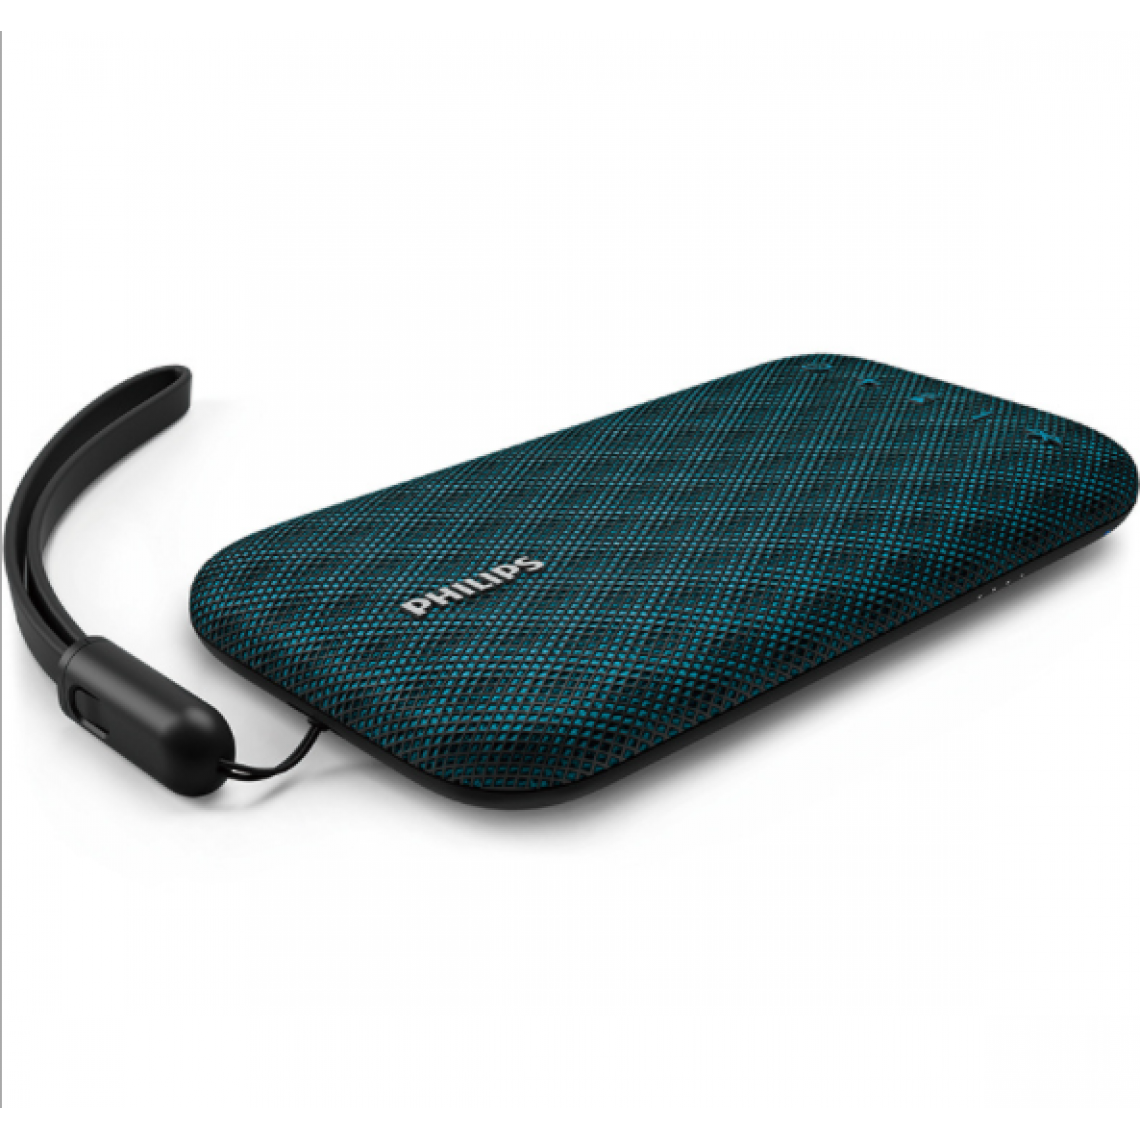 Chrono - Le haut-parleur Bluetooth sans fil Philips BT3900W est étanche et antichoc, avec sangle USB, microphone, fort et design(Vert) - Enceinte PC